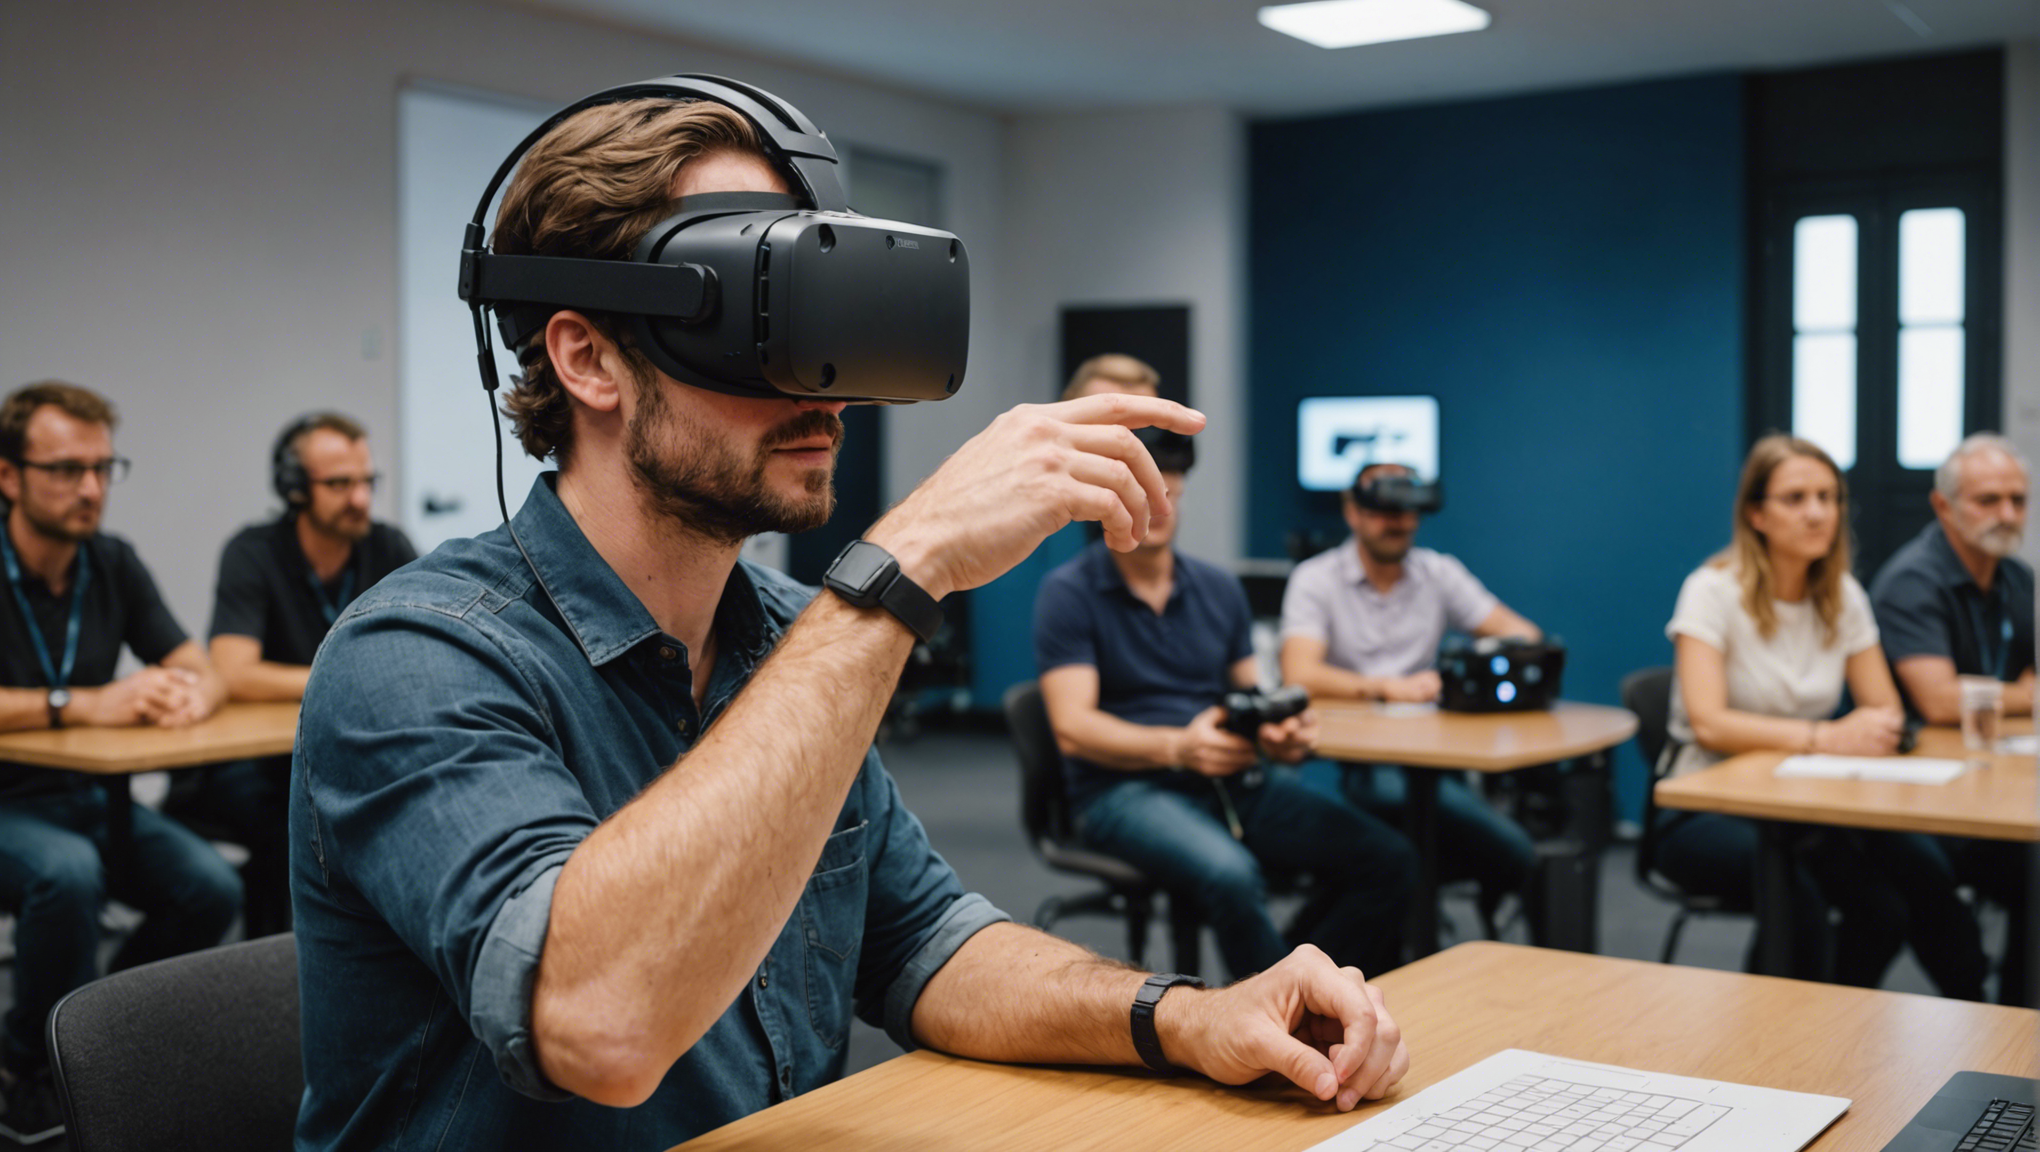 découvrez les avantages de l'animation en réalité virtuelle pour dynamiser vos réunions à paris. une expérience immersive pour stimuler la créativité et l'engagement de vos équipes.